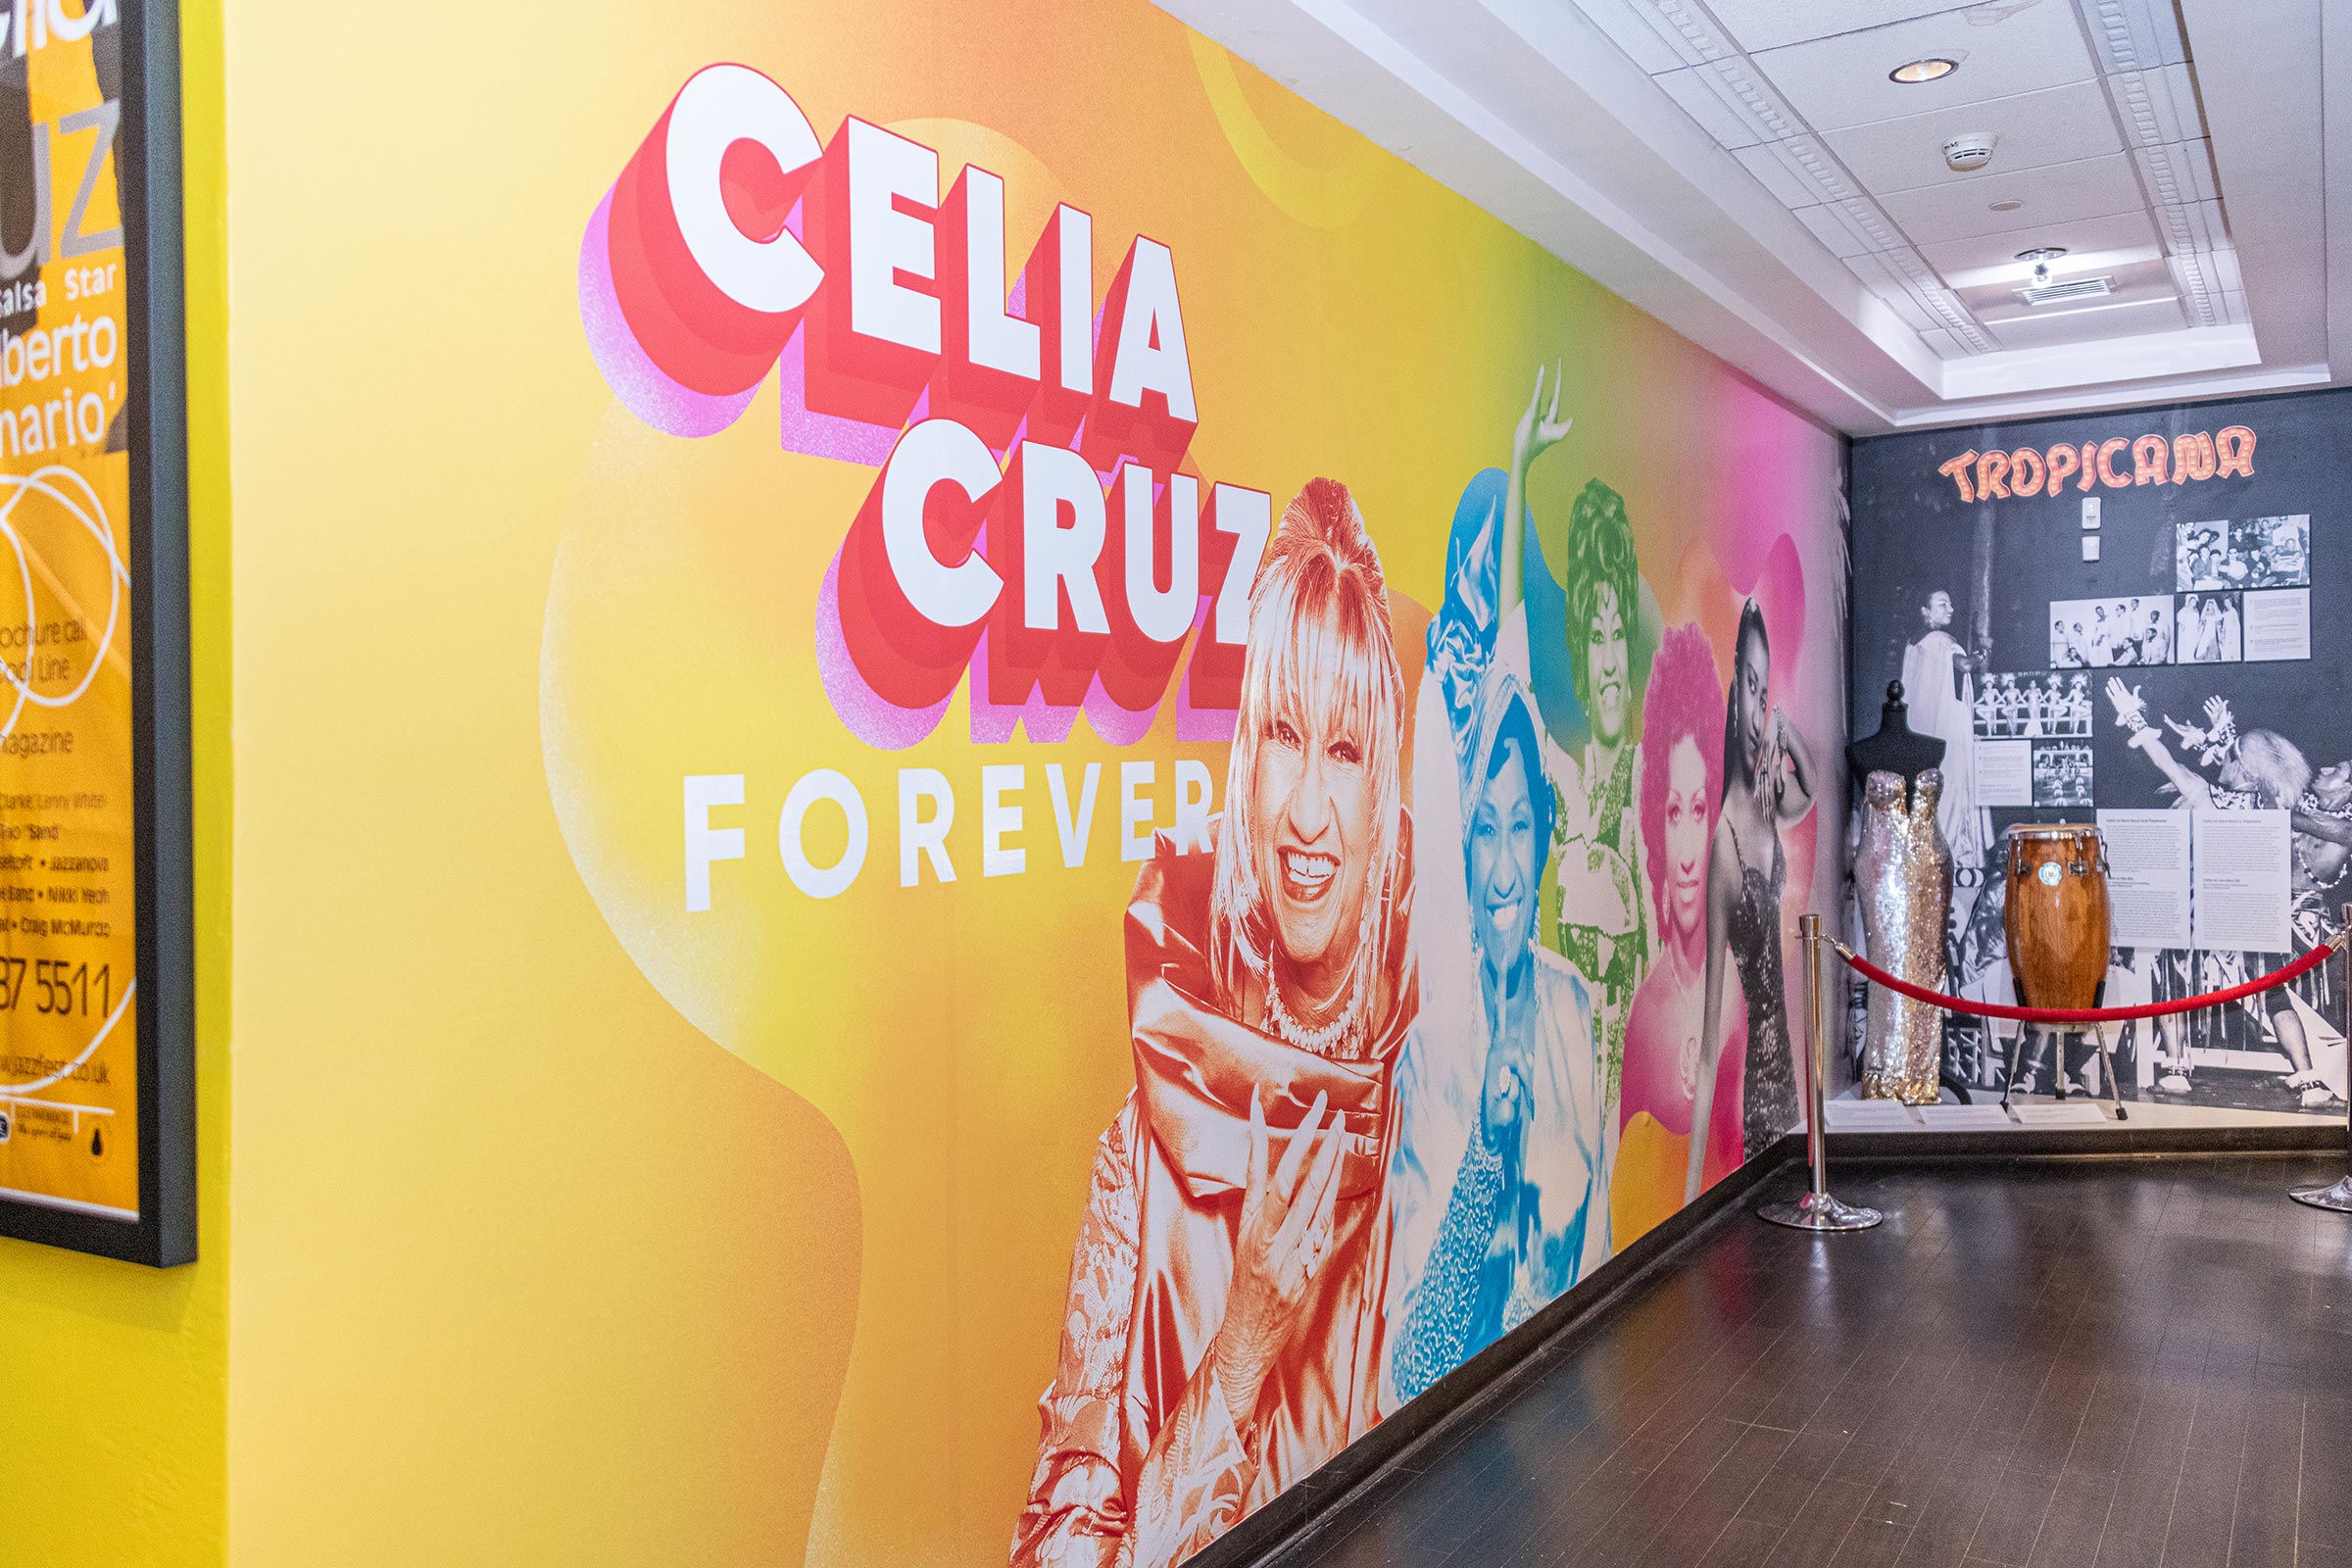 Celia Cruz Forever